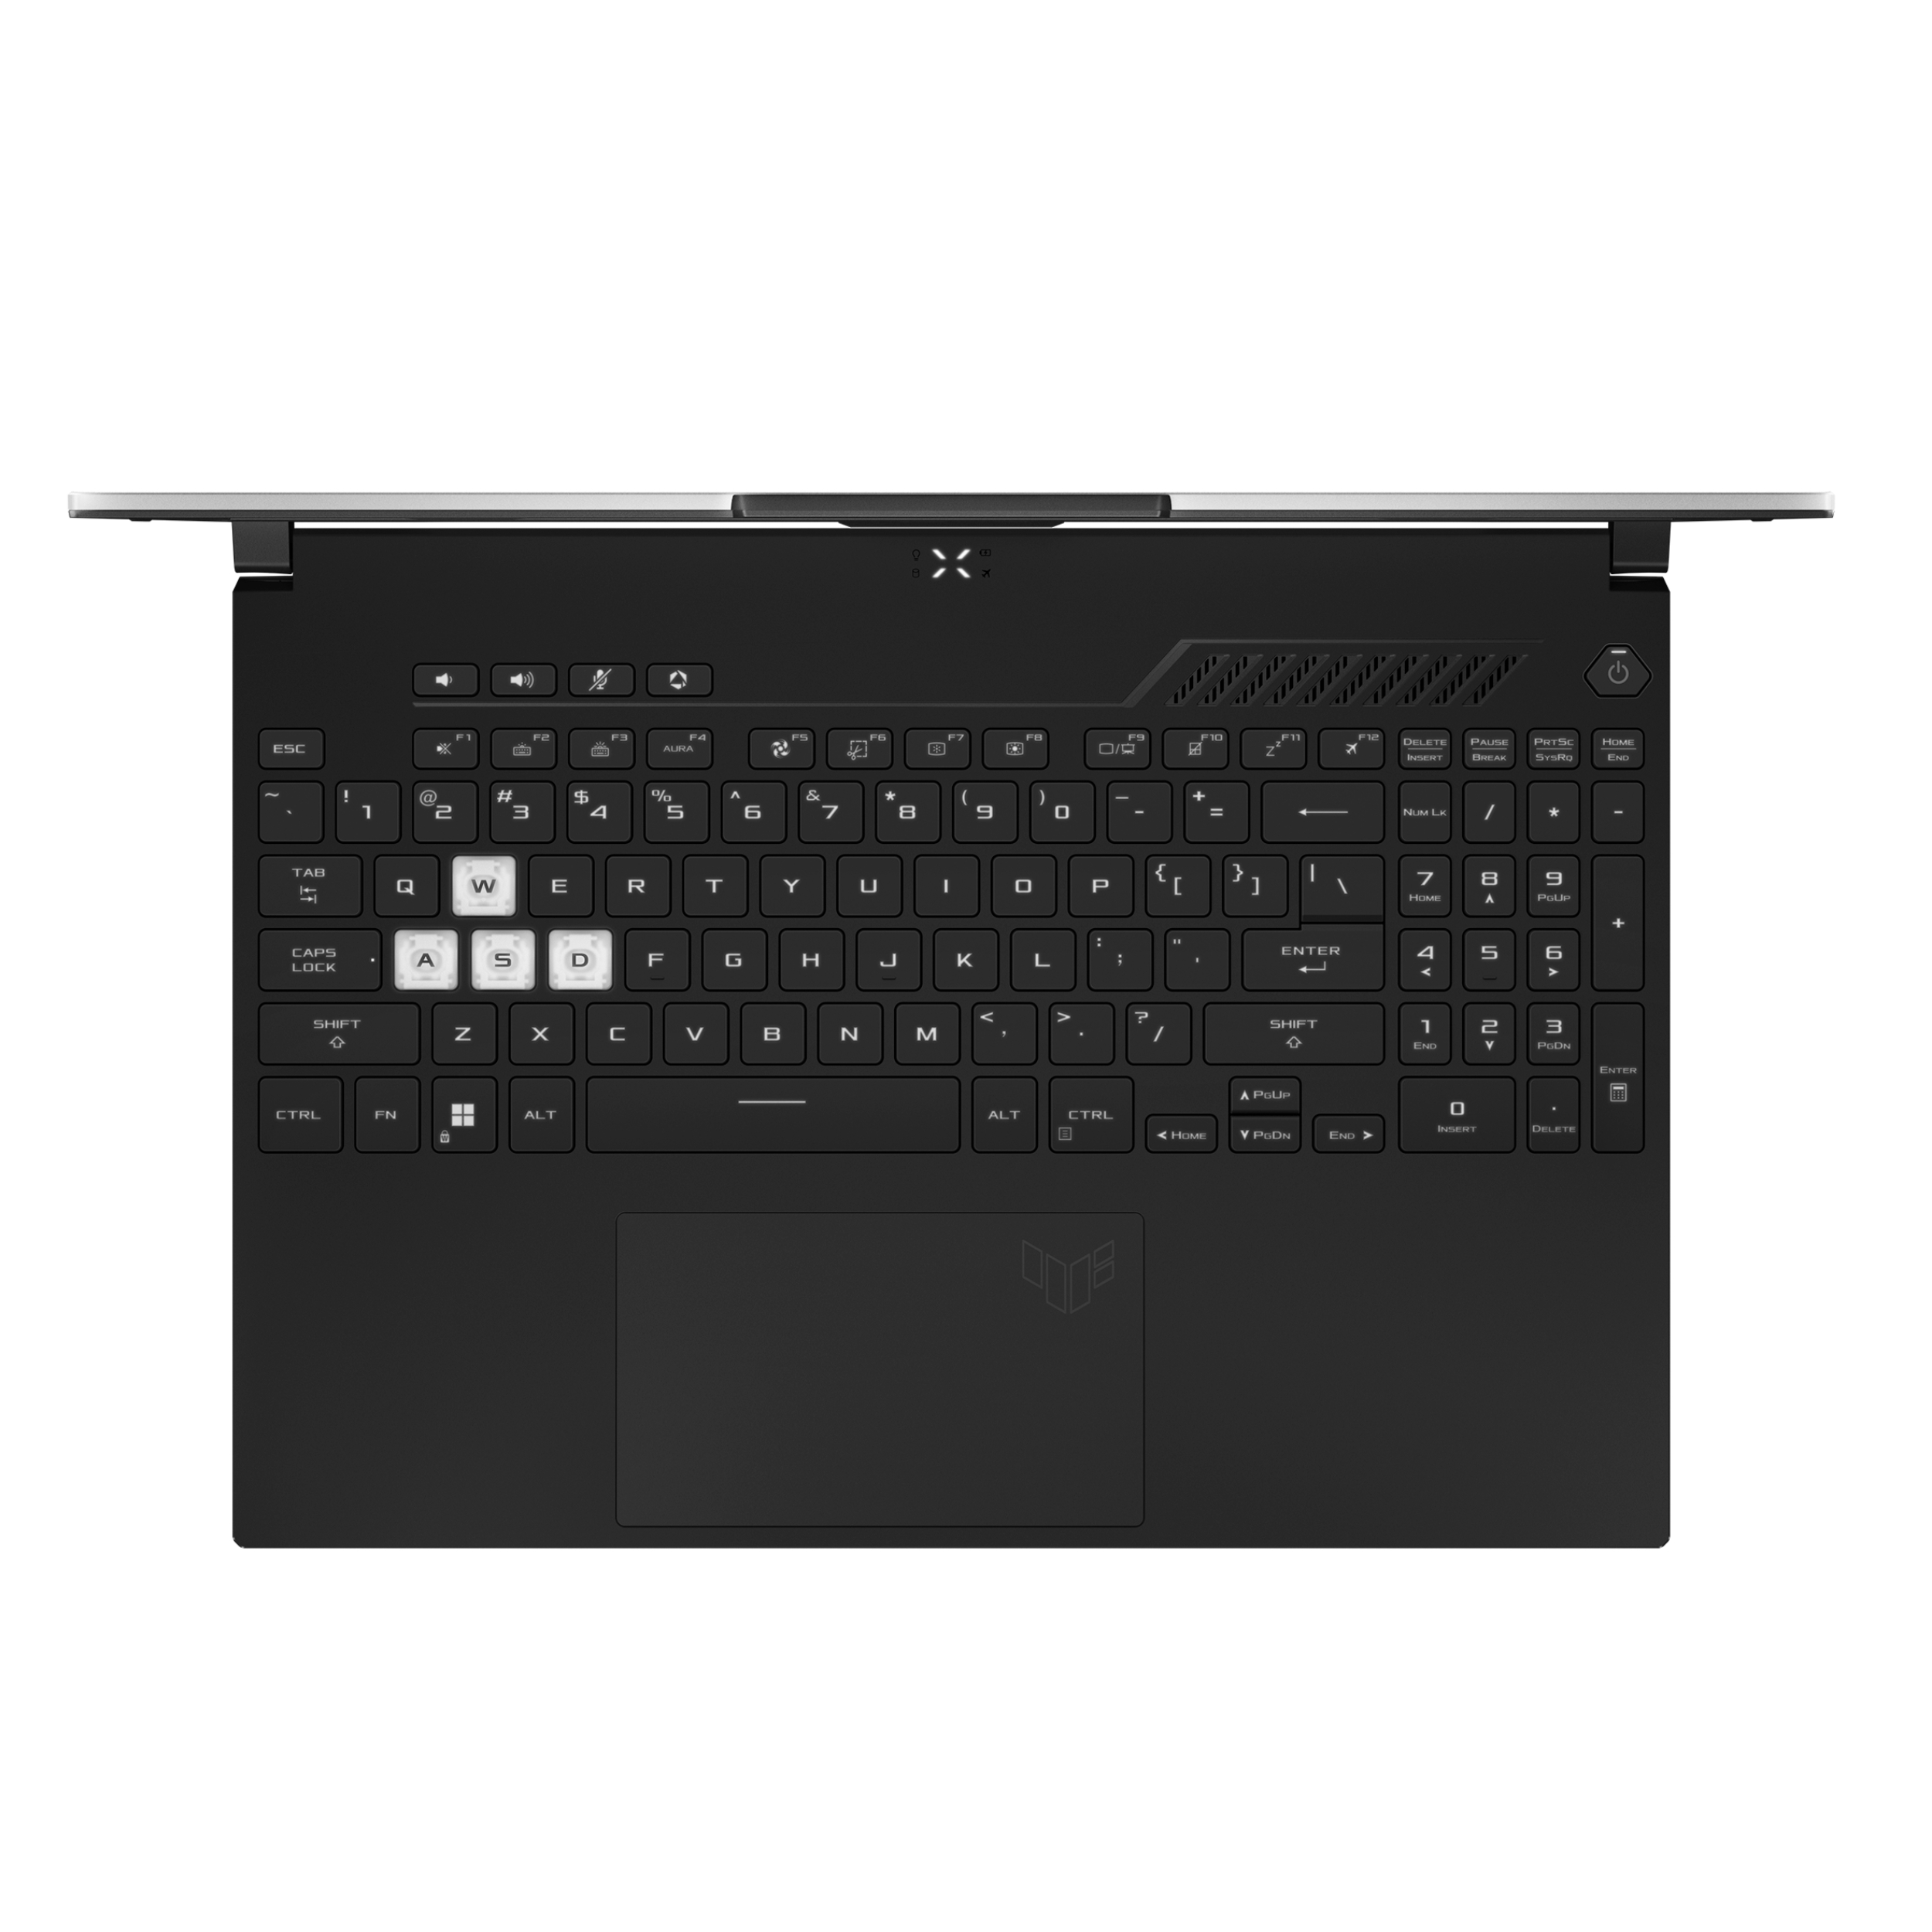 ✓ قیمت و مشخصات لپ تاپ 15.6 اینچی ایسوس مدل FX517ZR-F15.173070-B - کاستومشده - زیراکو ✓